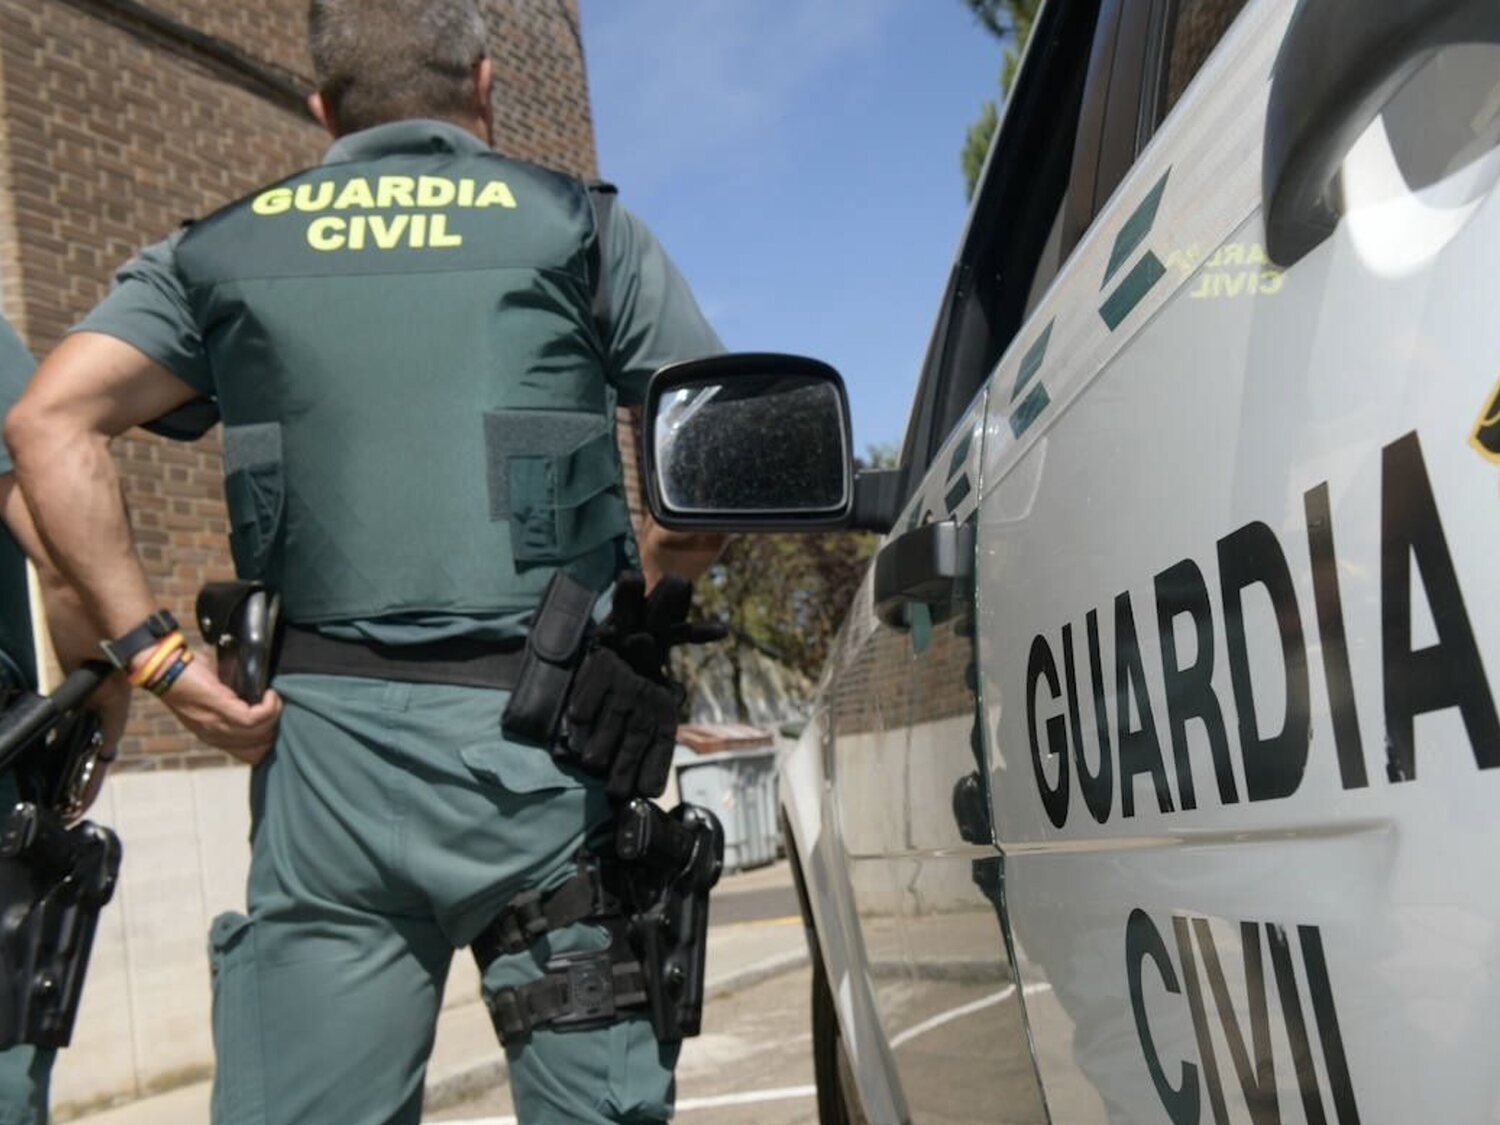 La Guardia Civil localiza un cadáver en Hinojal que podría ser Vicente Sánchez, desaparecido tras ganar la lotería